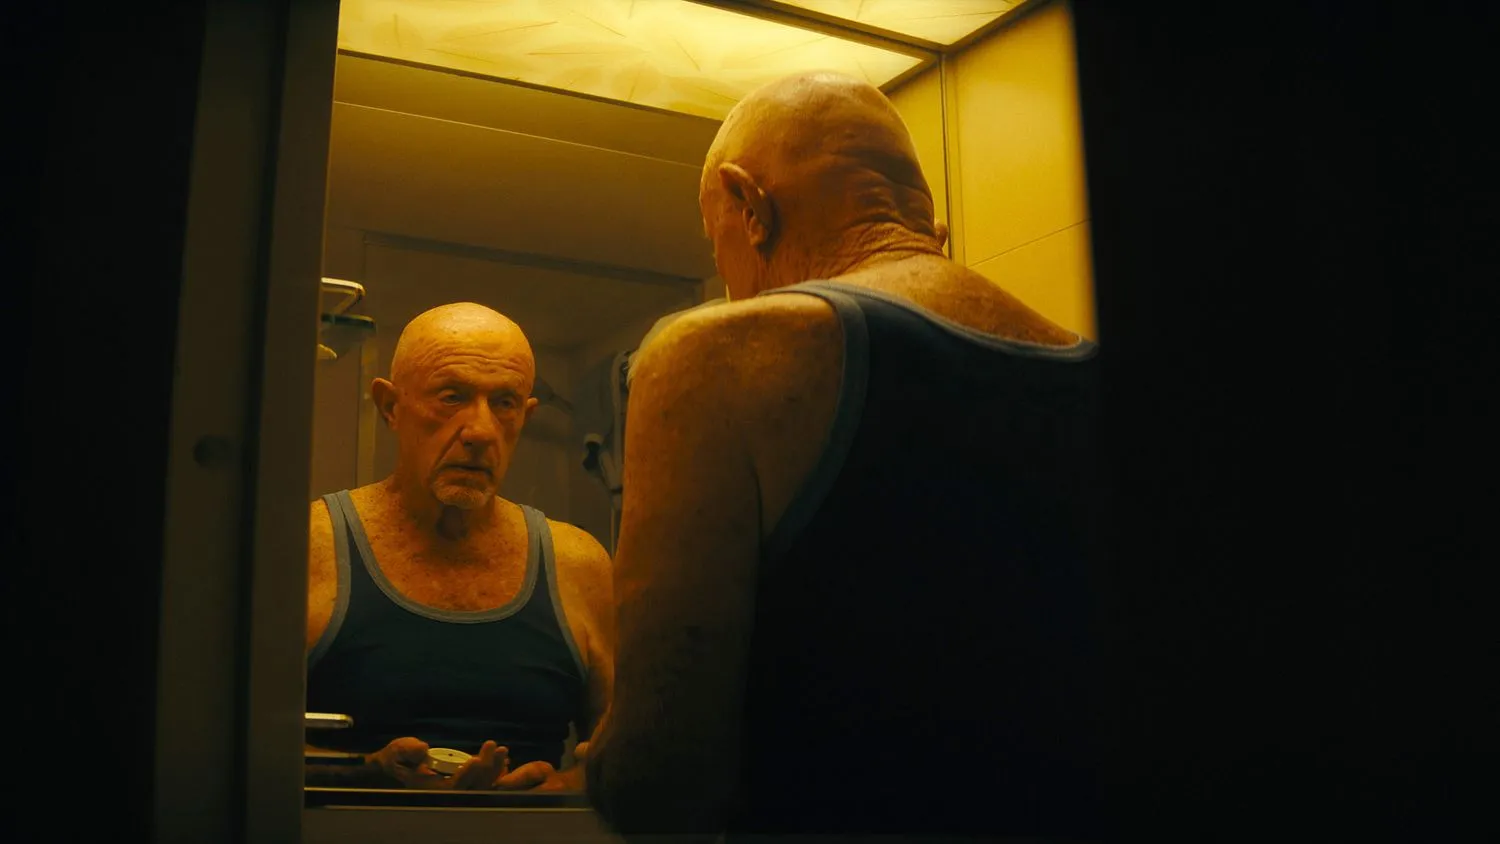 Nahaufnahme eines älteren Mannes, der eine dunkle Weste trägt, während er in einem schwach beleuchteten Badezimmerspiegel sein Spiegelbild betrachtet.